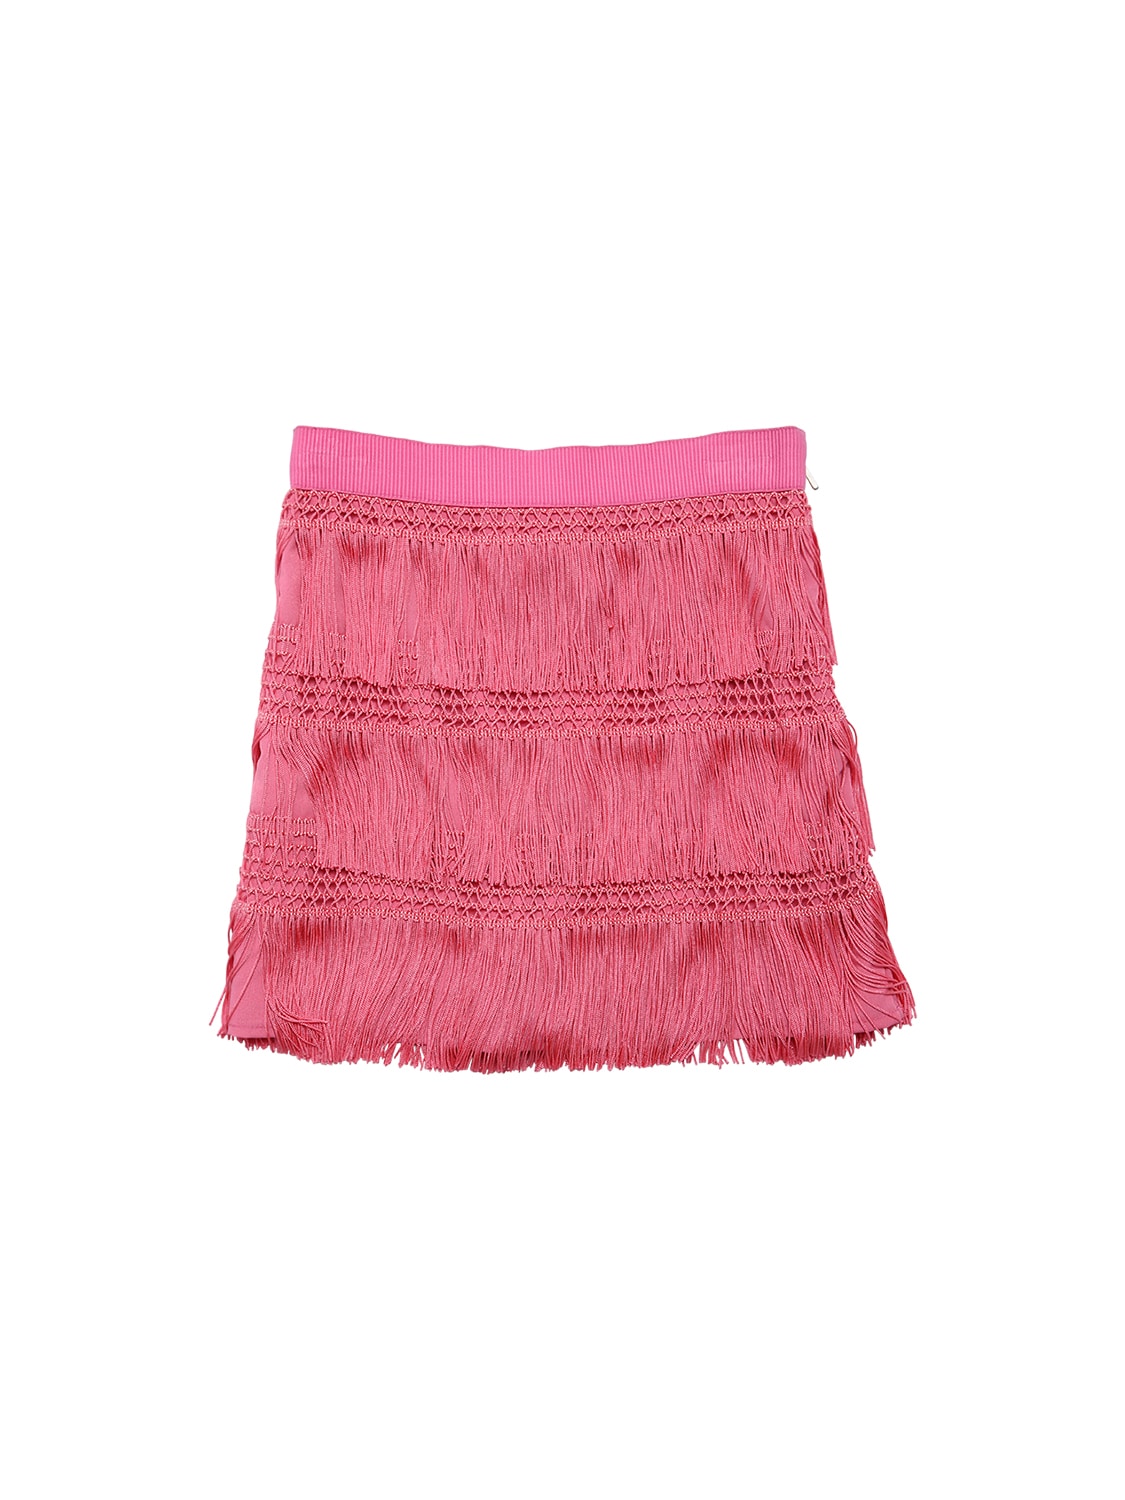 Alberta Ferretti Kids' Mini Skirt W/ Fringes In Pink